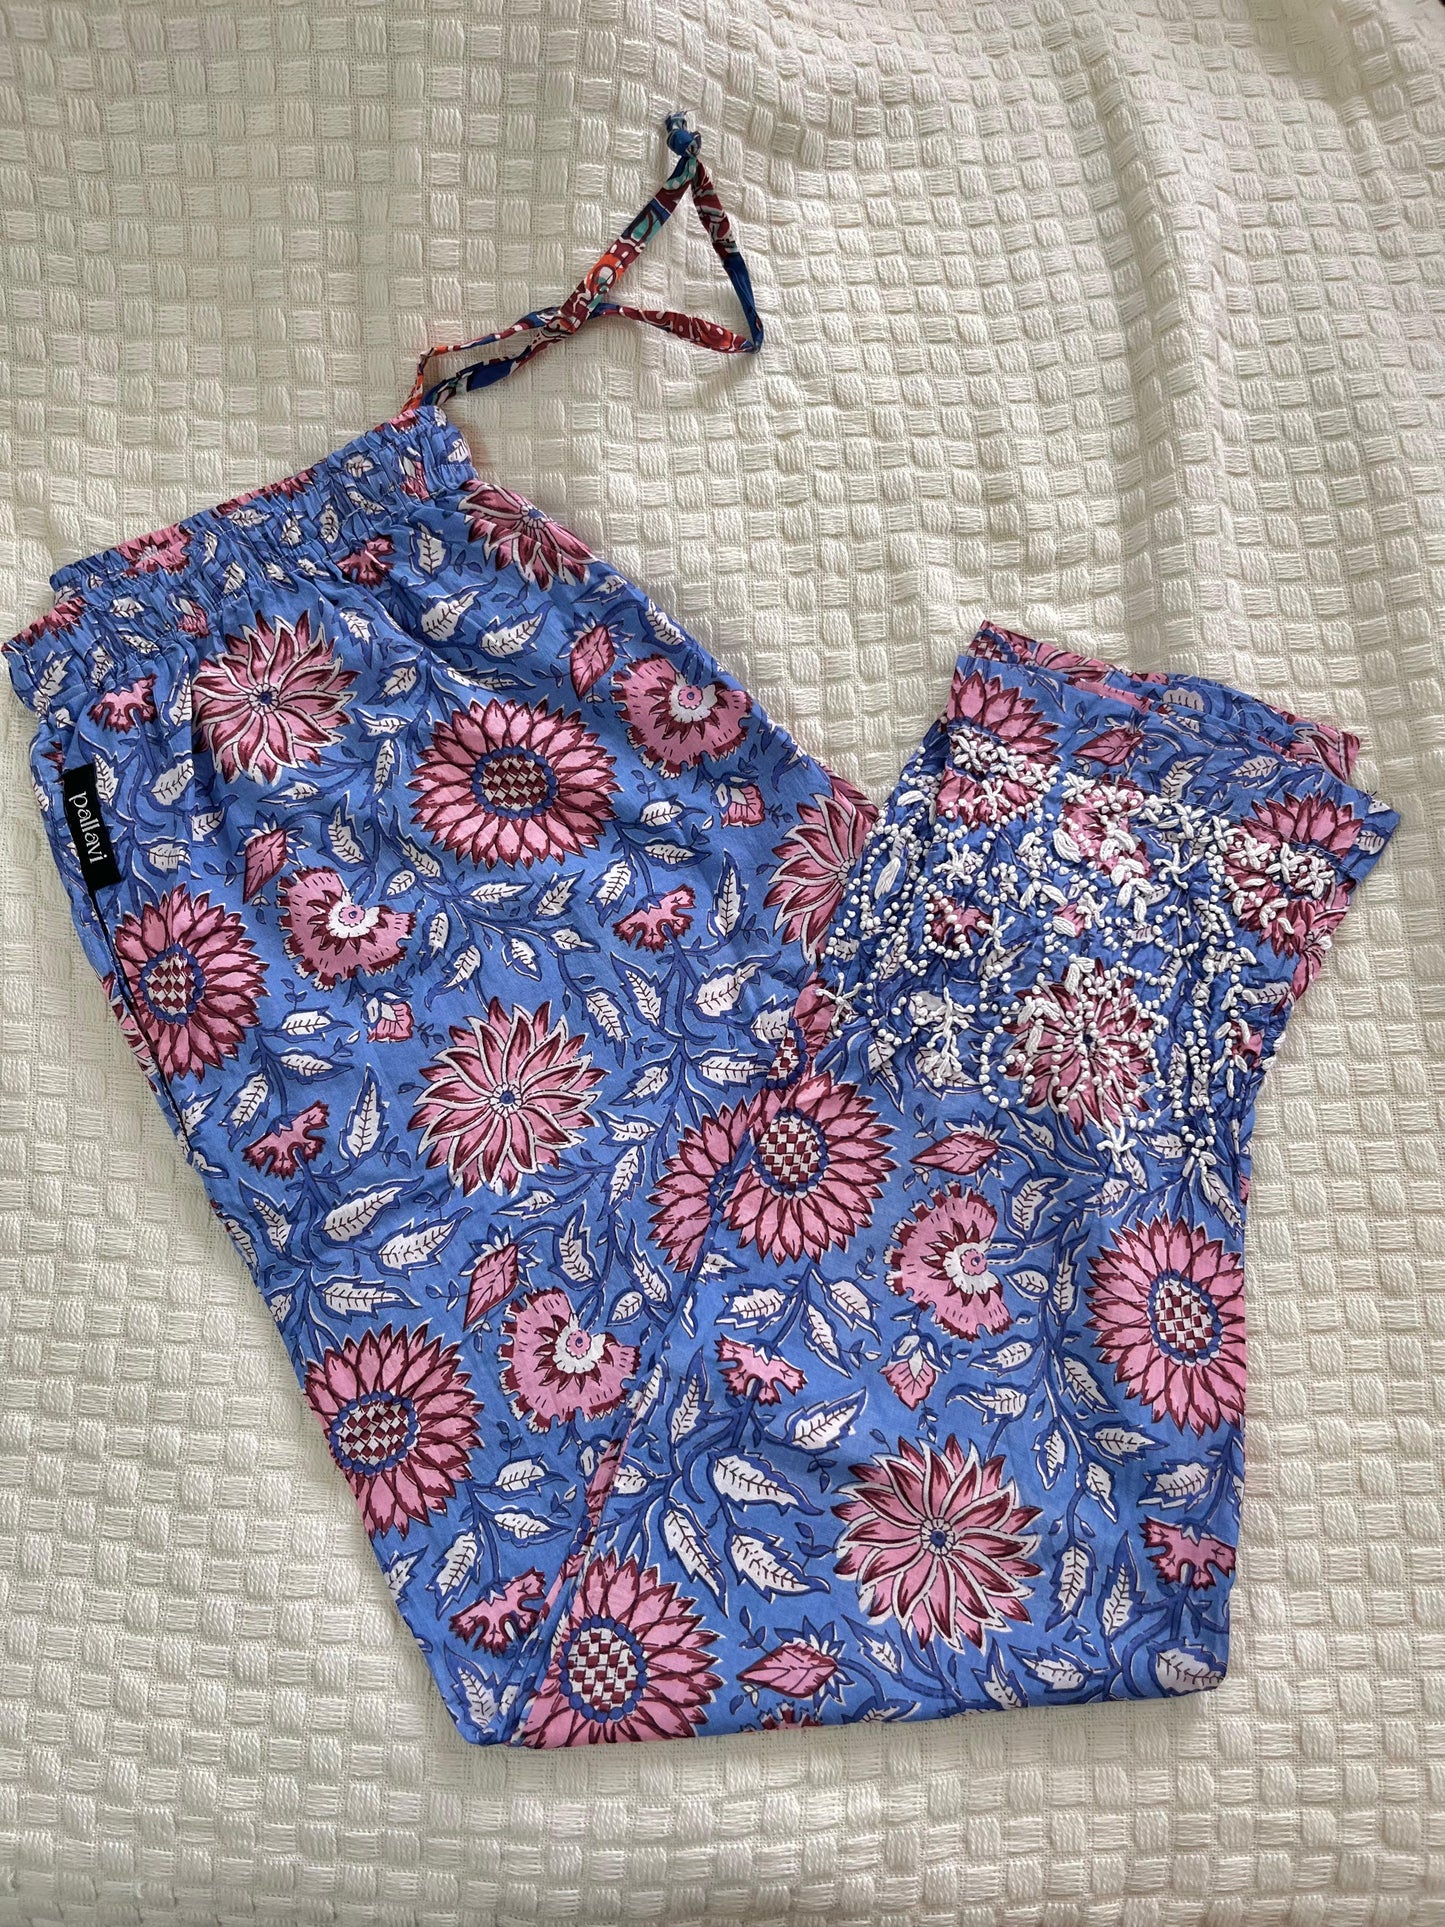 Printed Pants - Floral Blue Pink